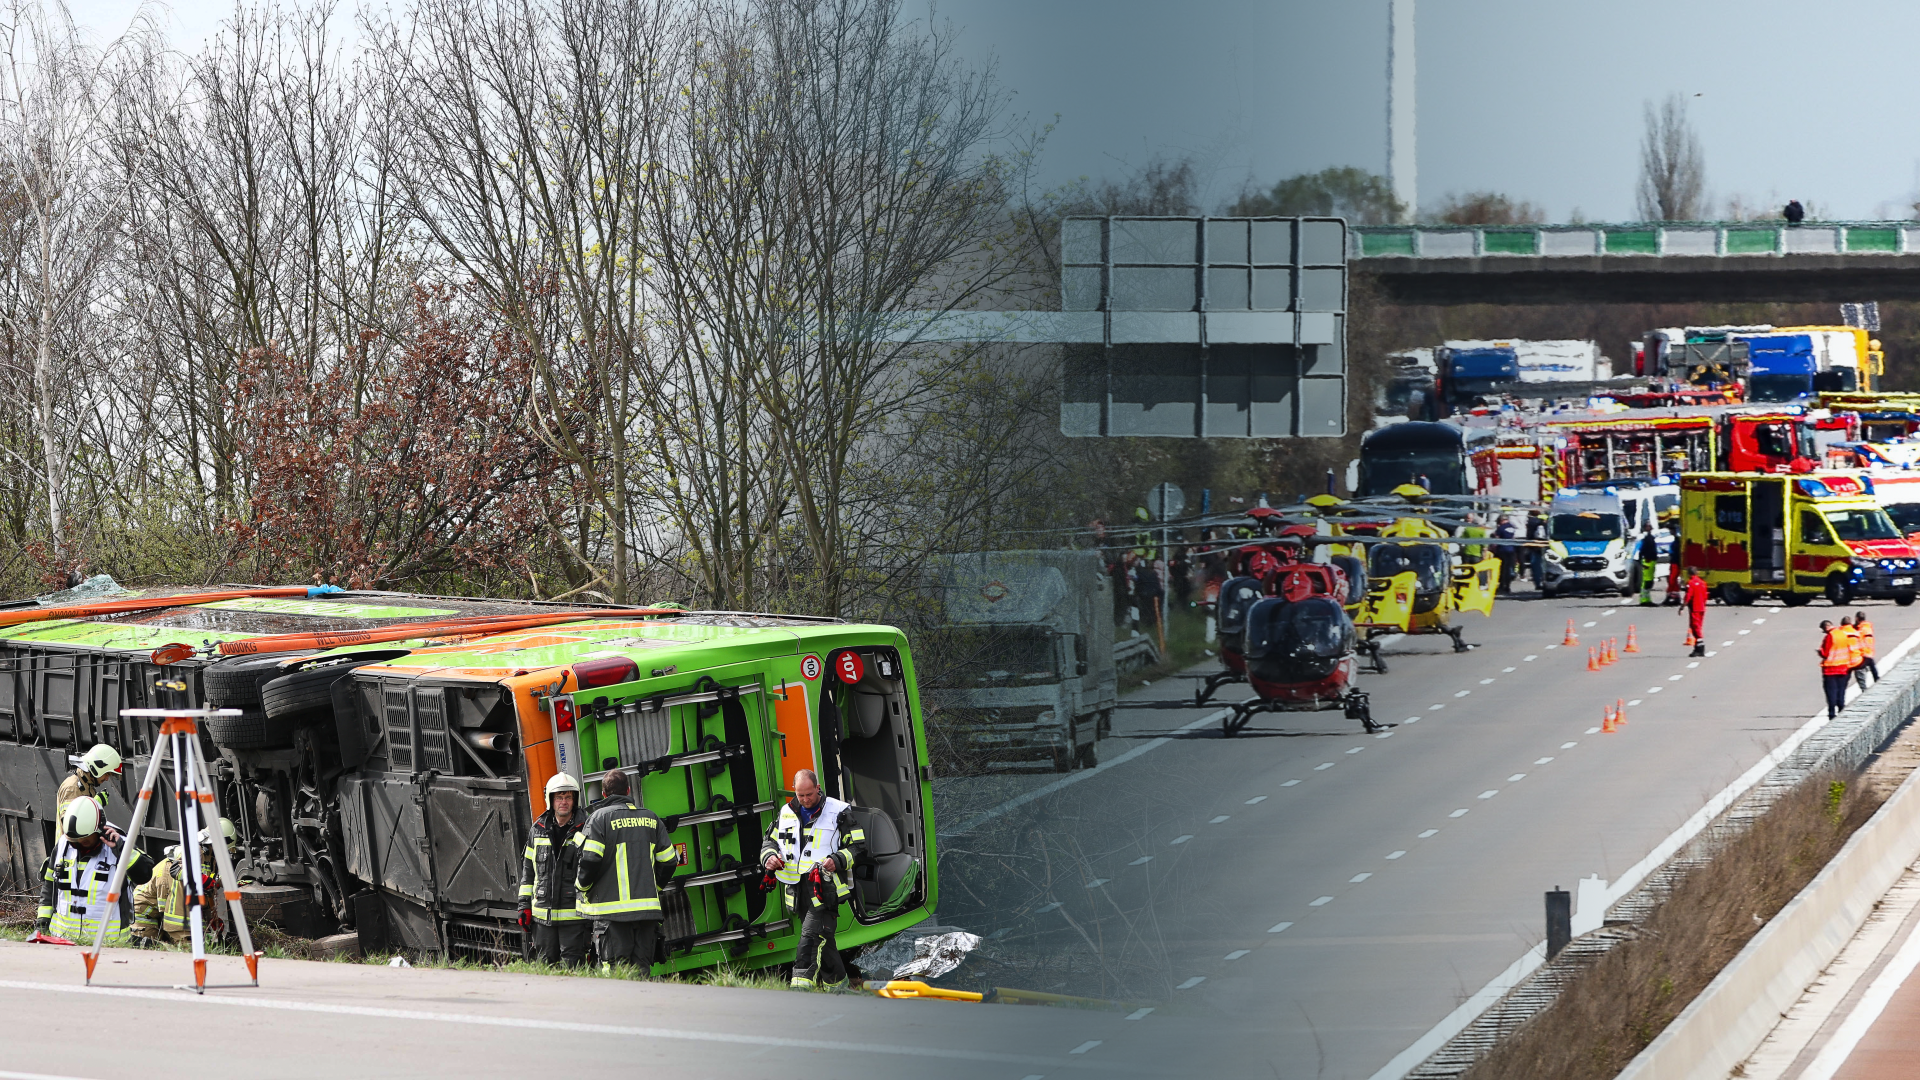 Fernbus-Reise nimmt auf A9 tödliches Ende